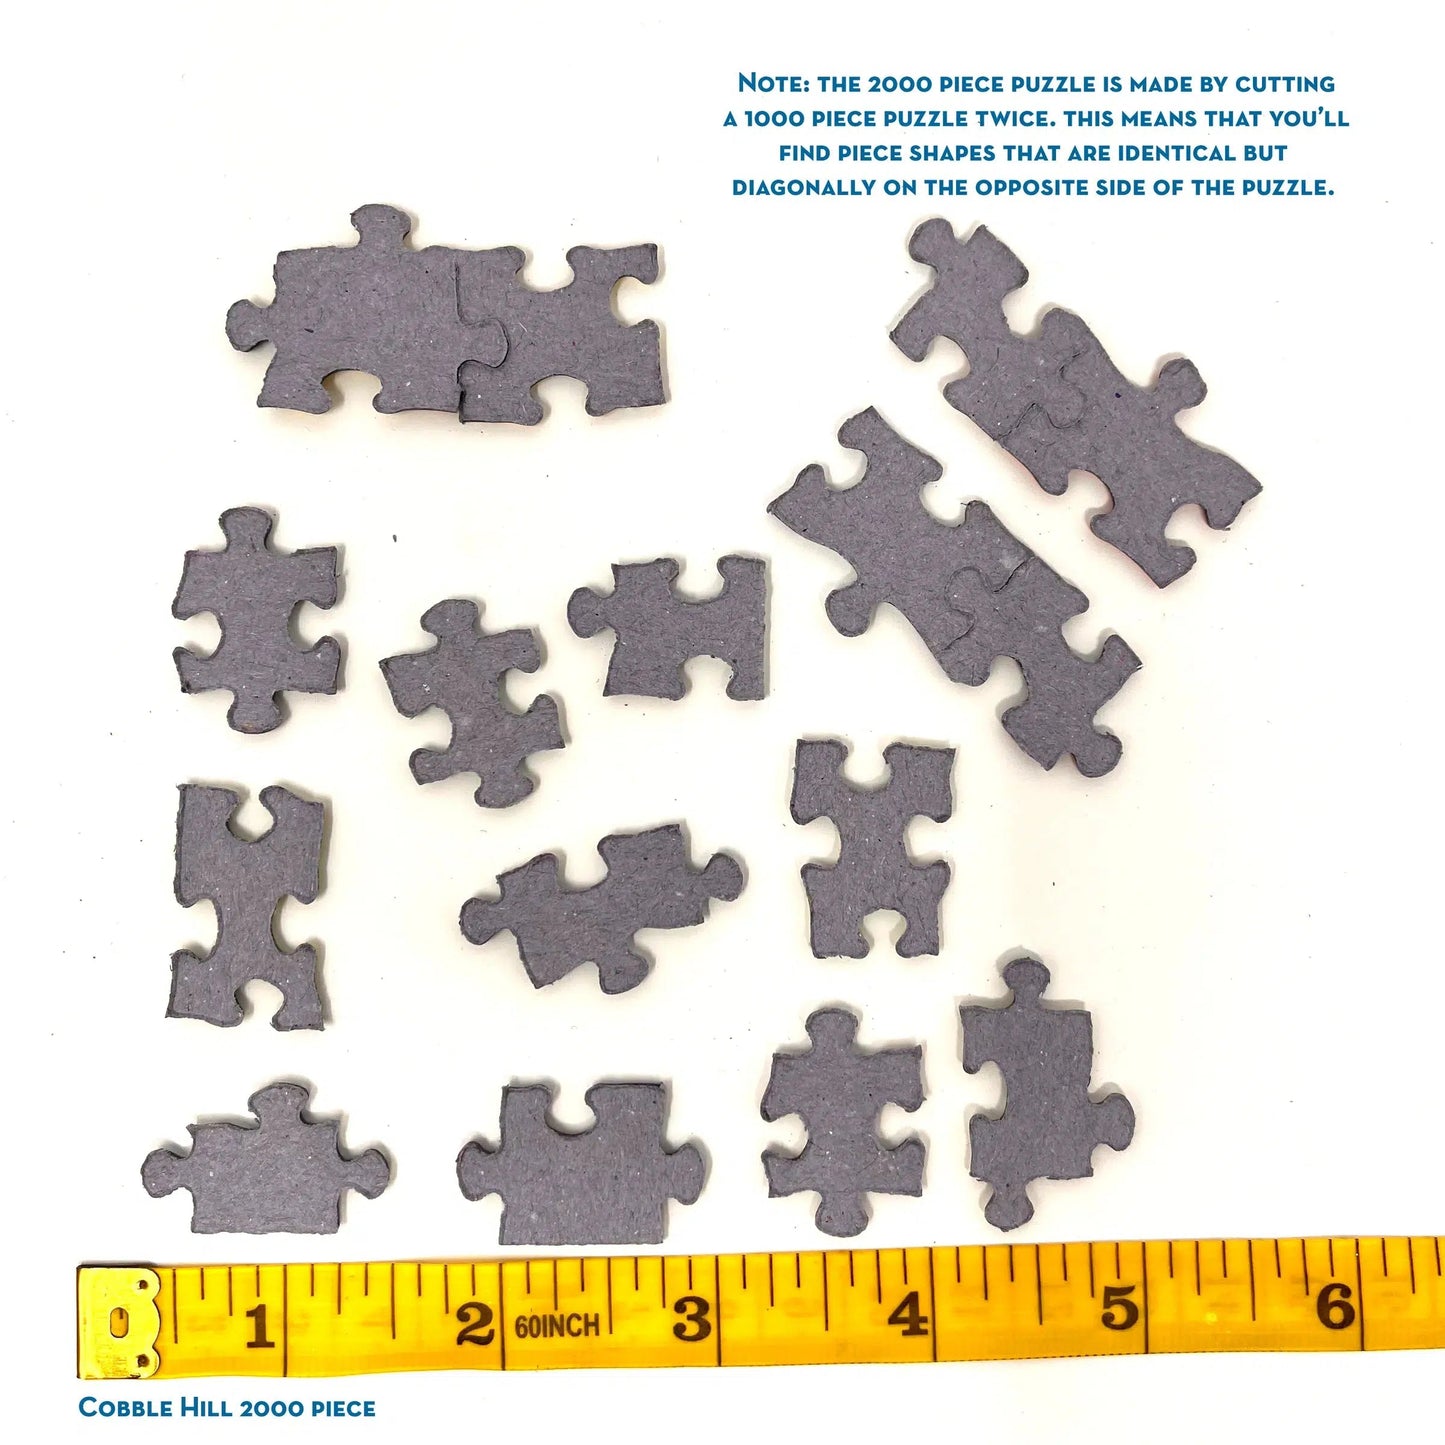 Four Square Quilt Blocks 2000 Piece Jigsaw Puzzle Cobble Hill